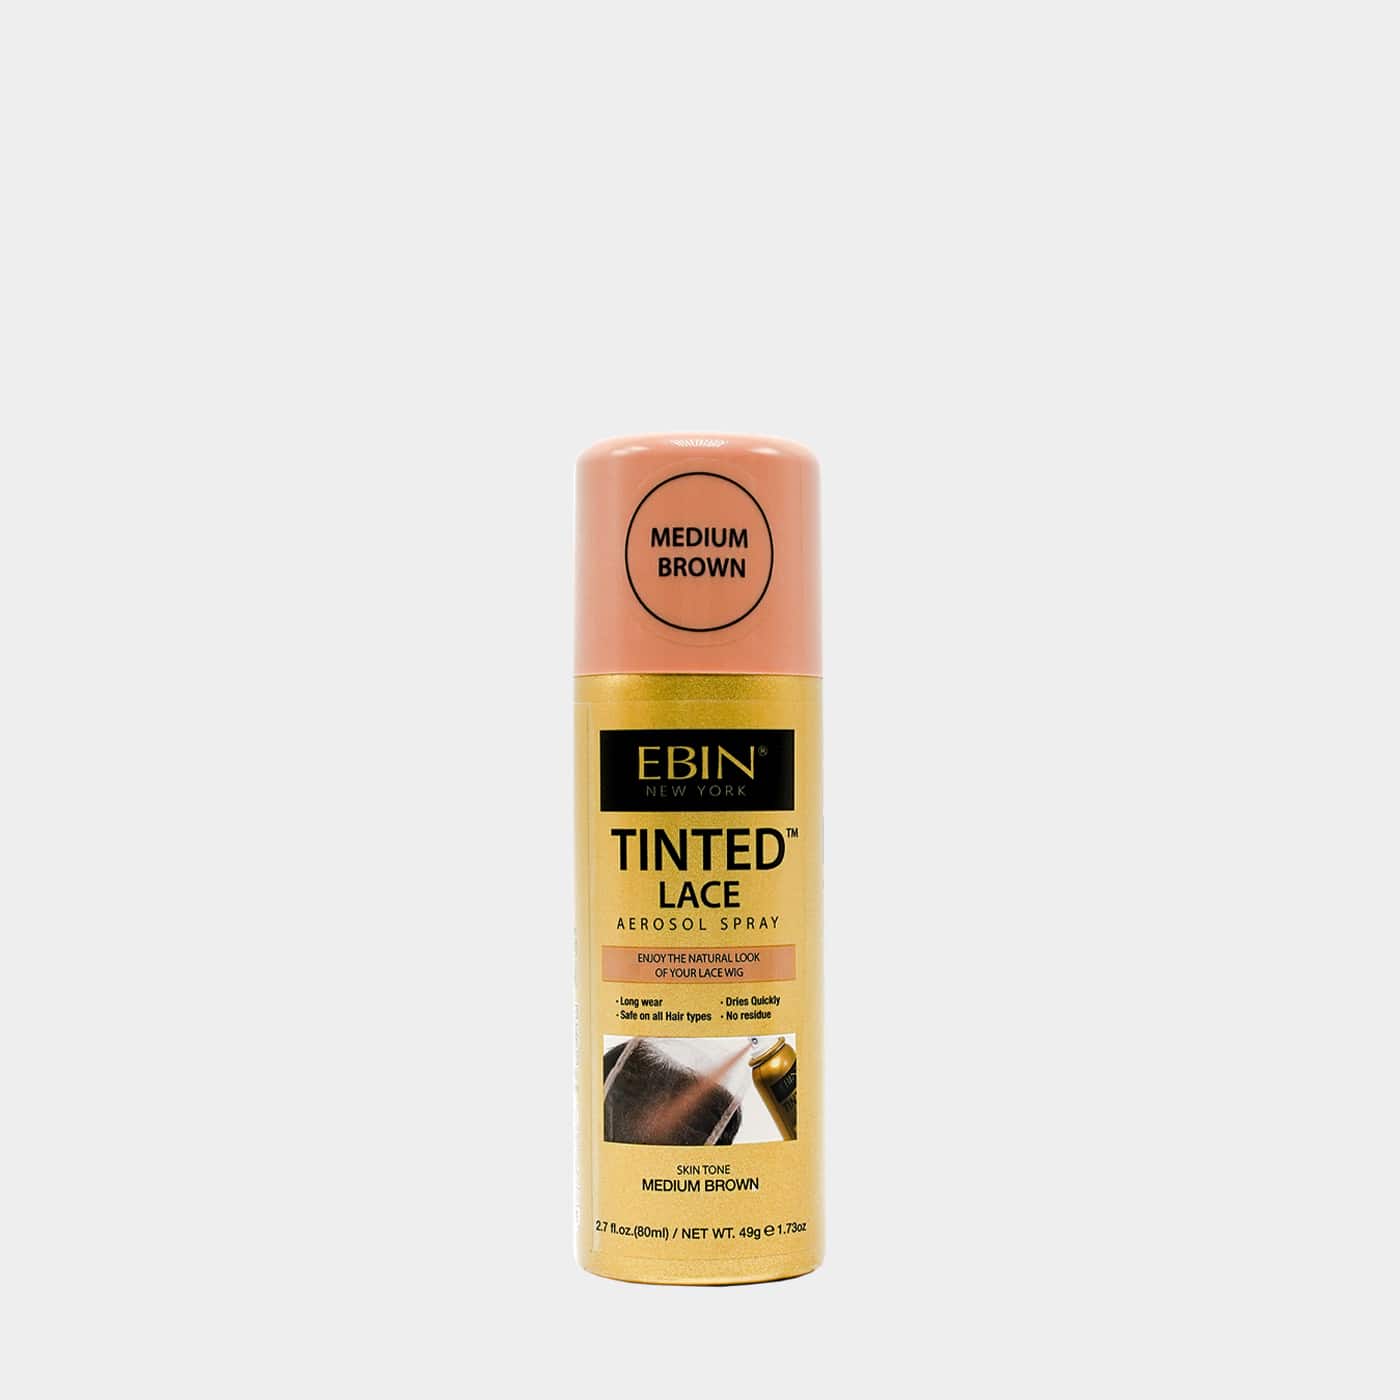 EBIN NEW YORK Tinted Lace Spray - Medium Dark Brown 2.7 fl.oz